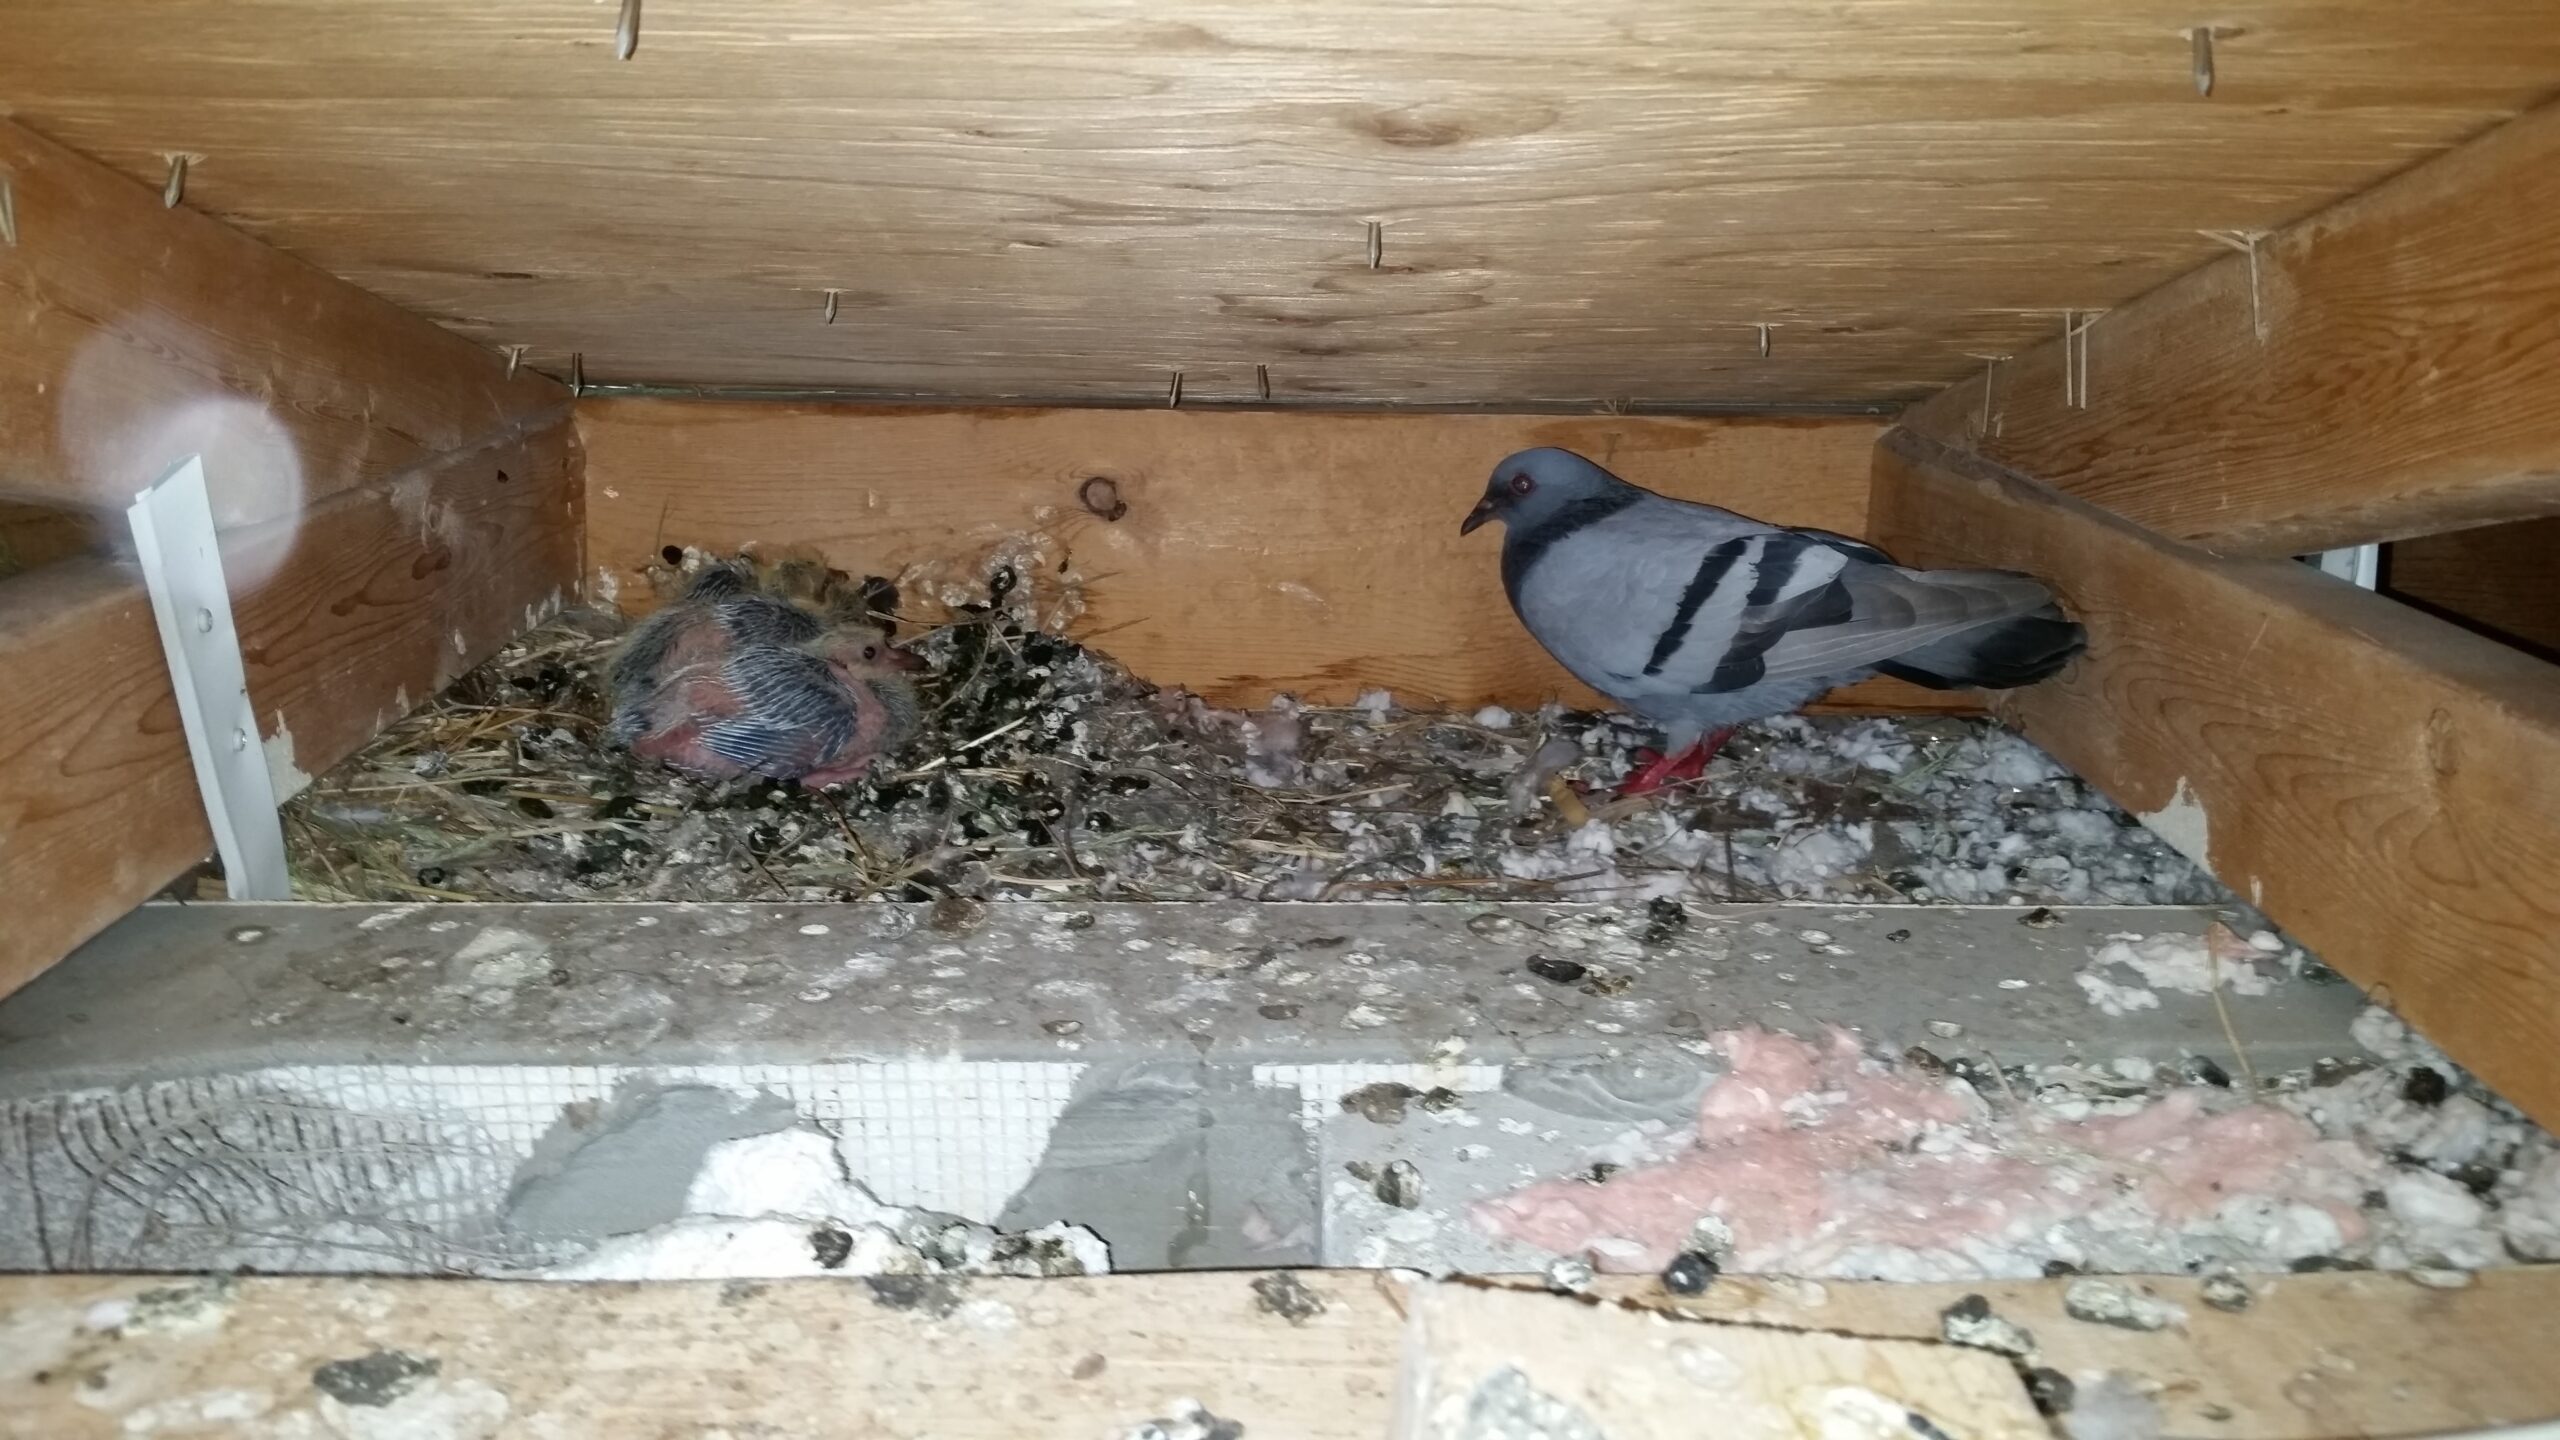 Os pássaros nidificados nos beirais causam danos?